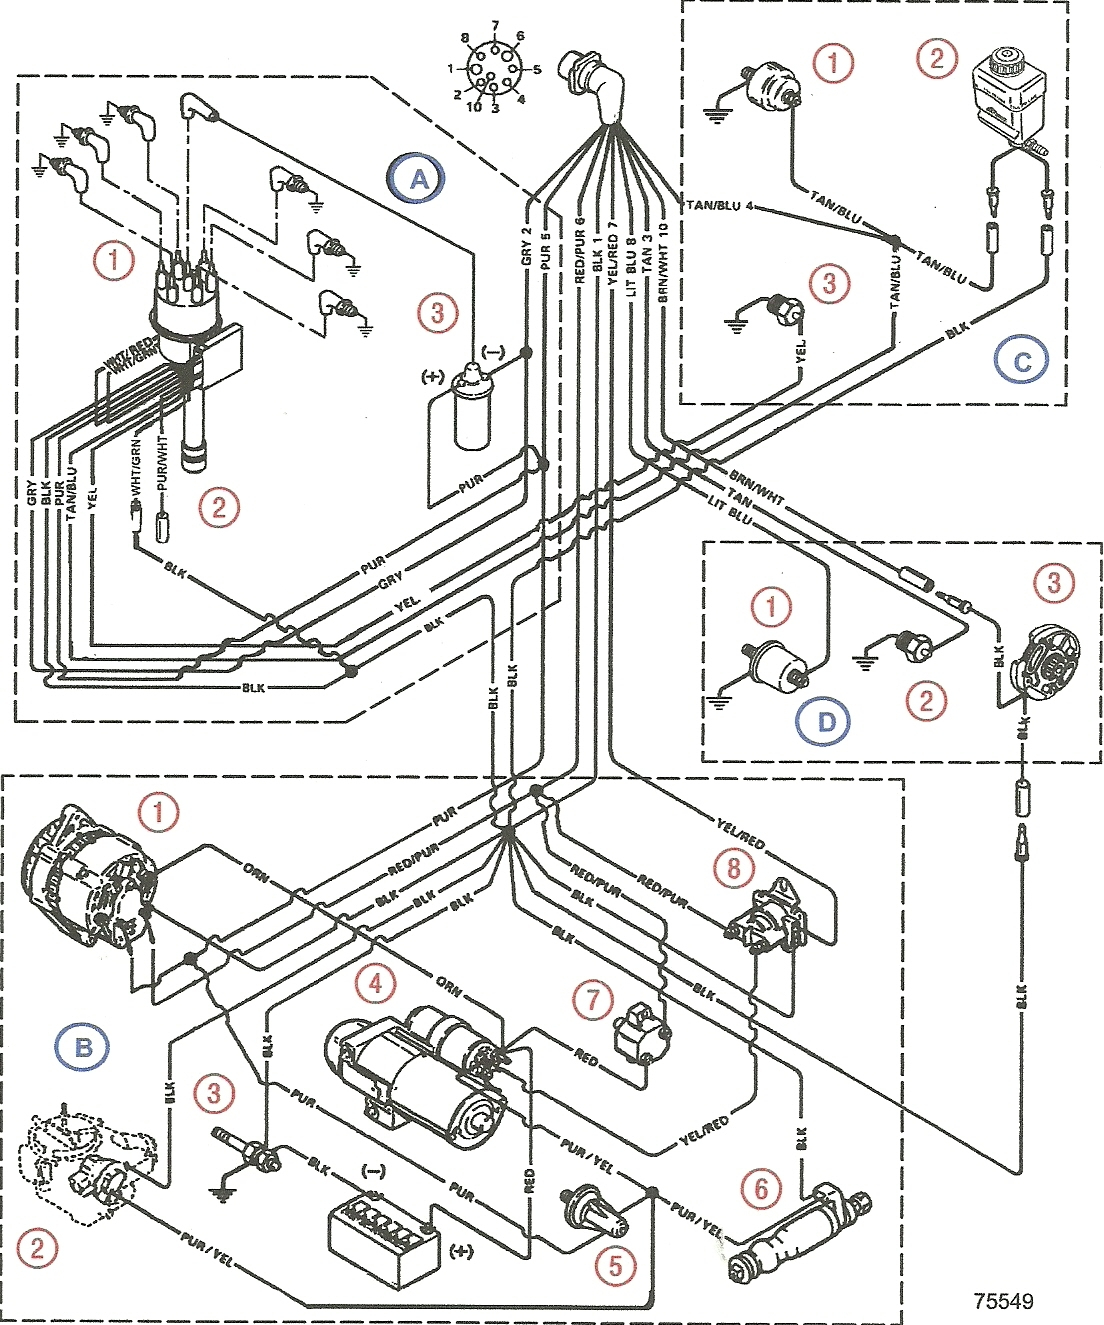 Mercruiser 4 3 Wiring Diagram Free Wiring Diagram